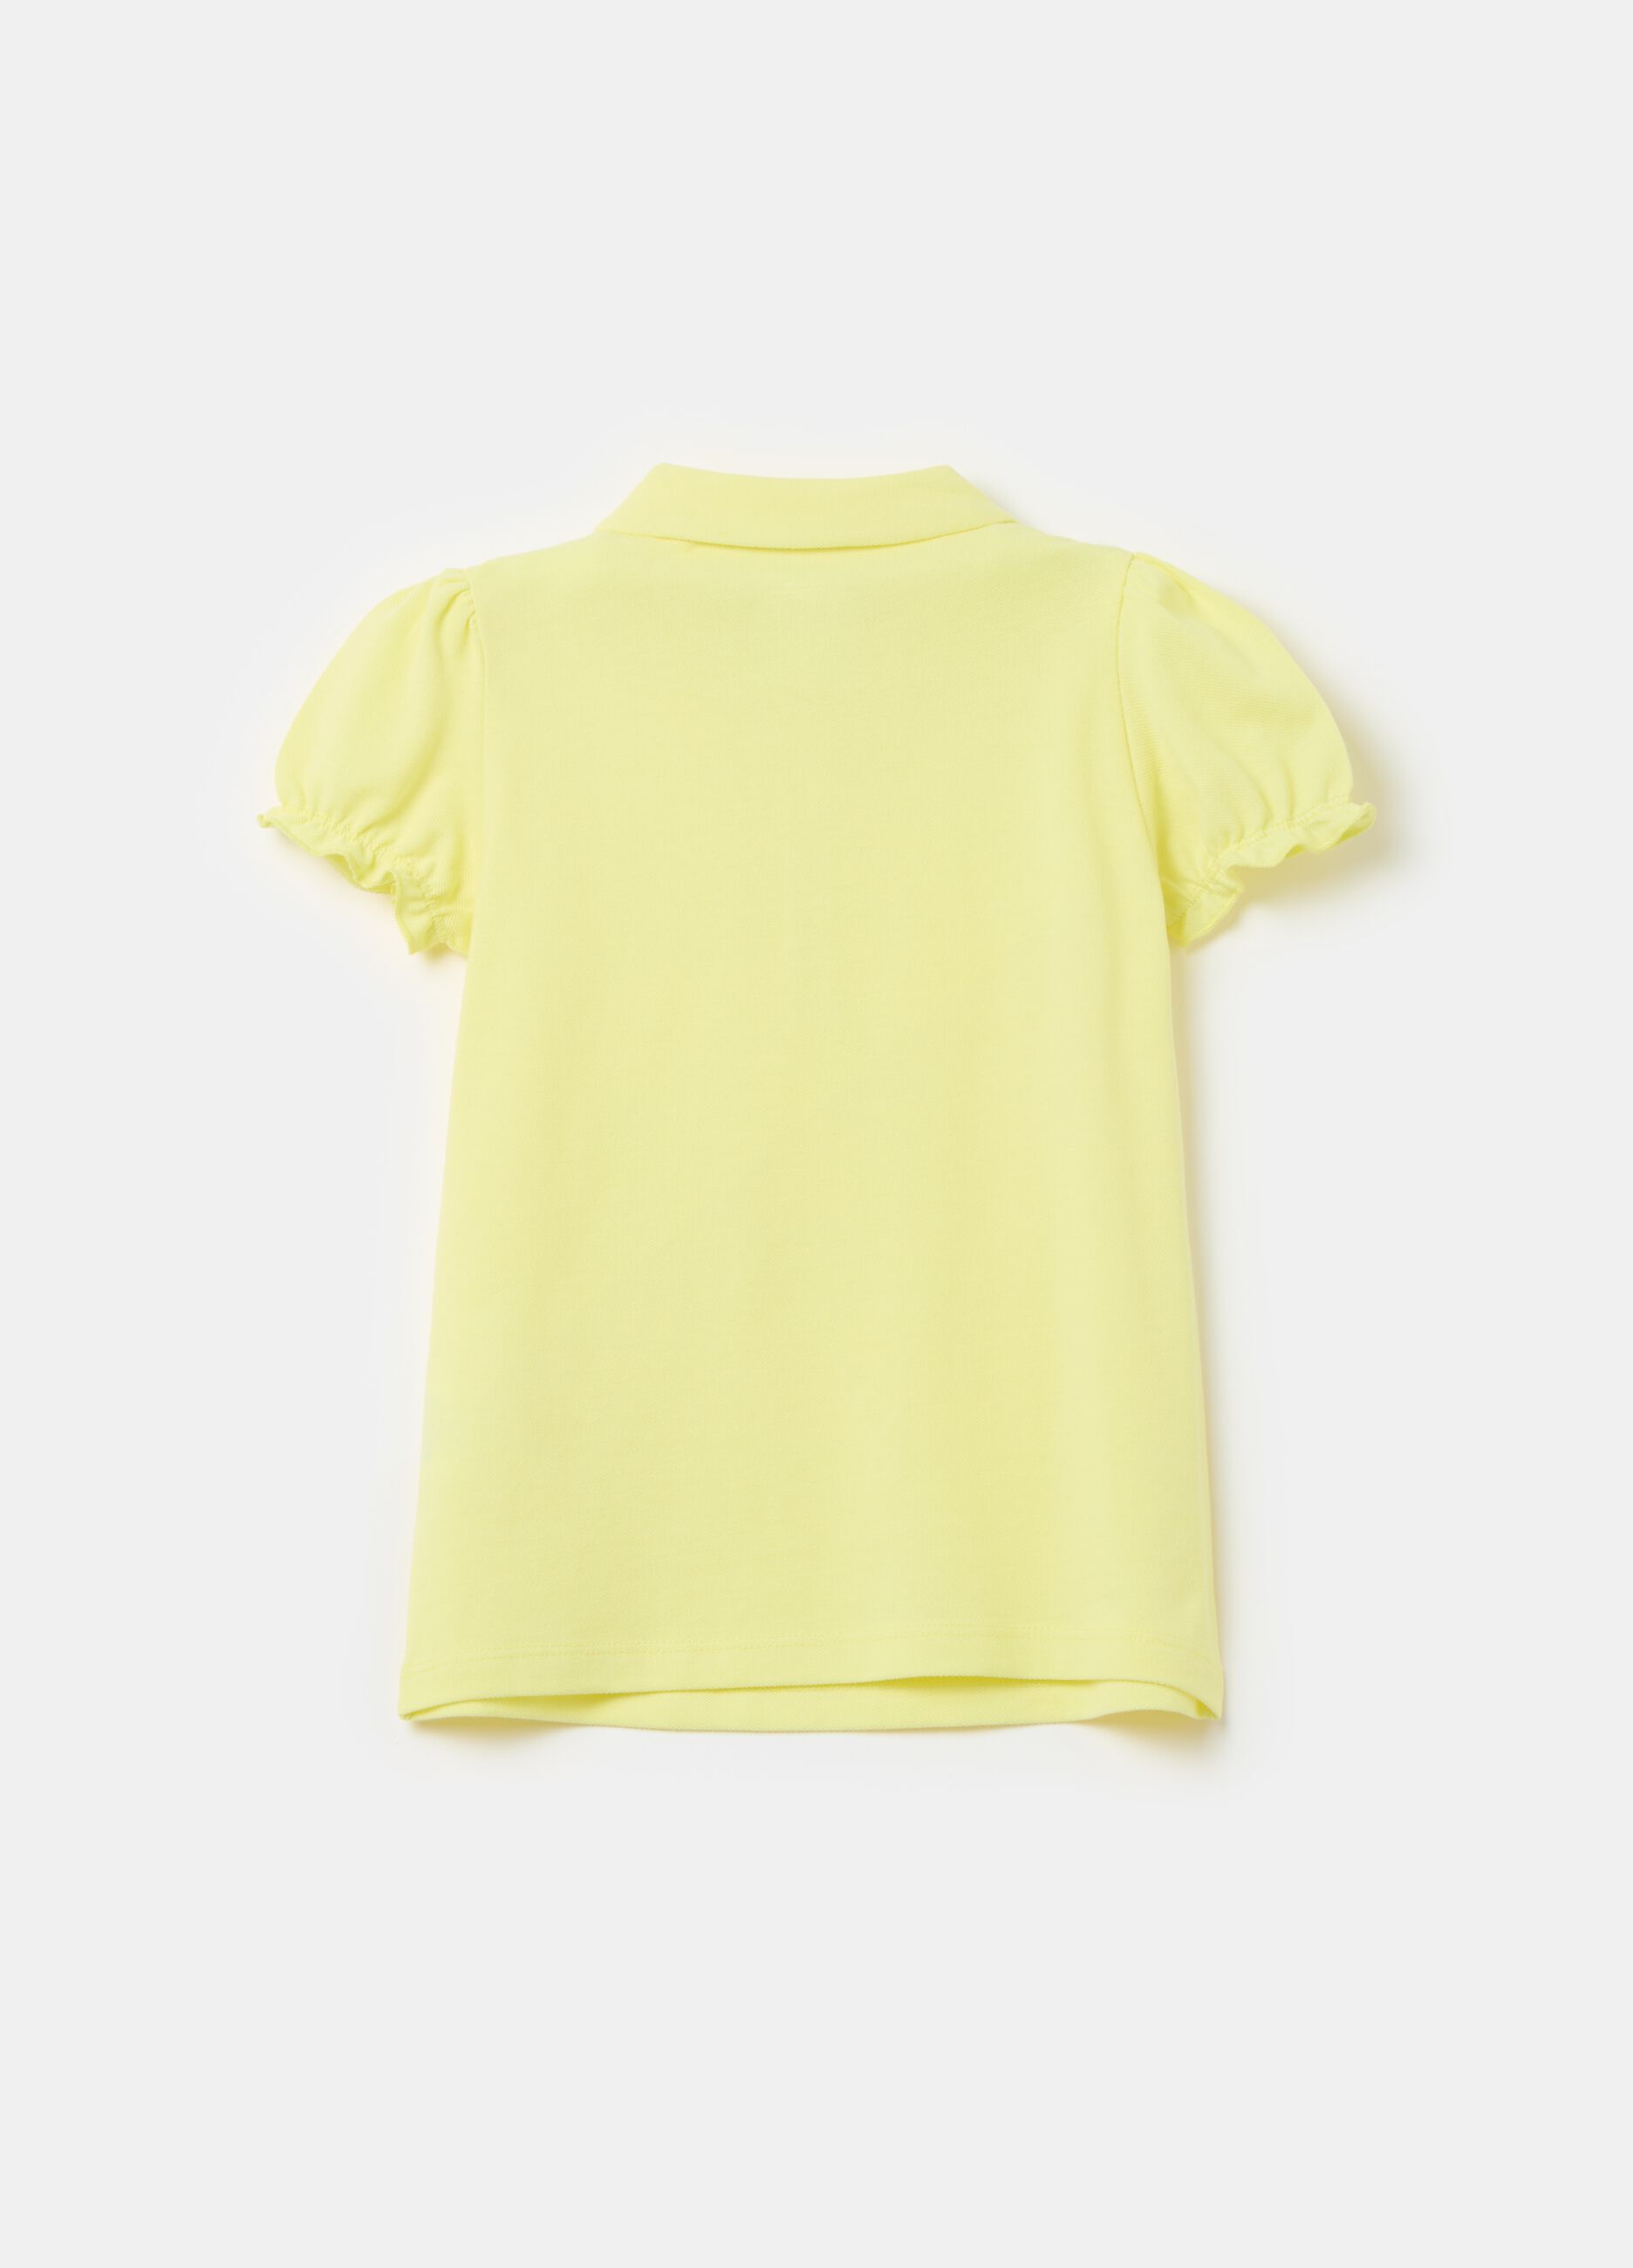 Cotton piquet polo shirt with frill